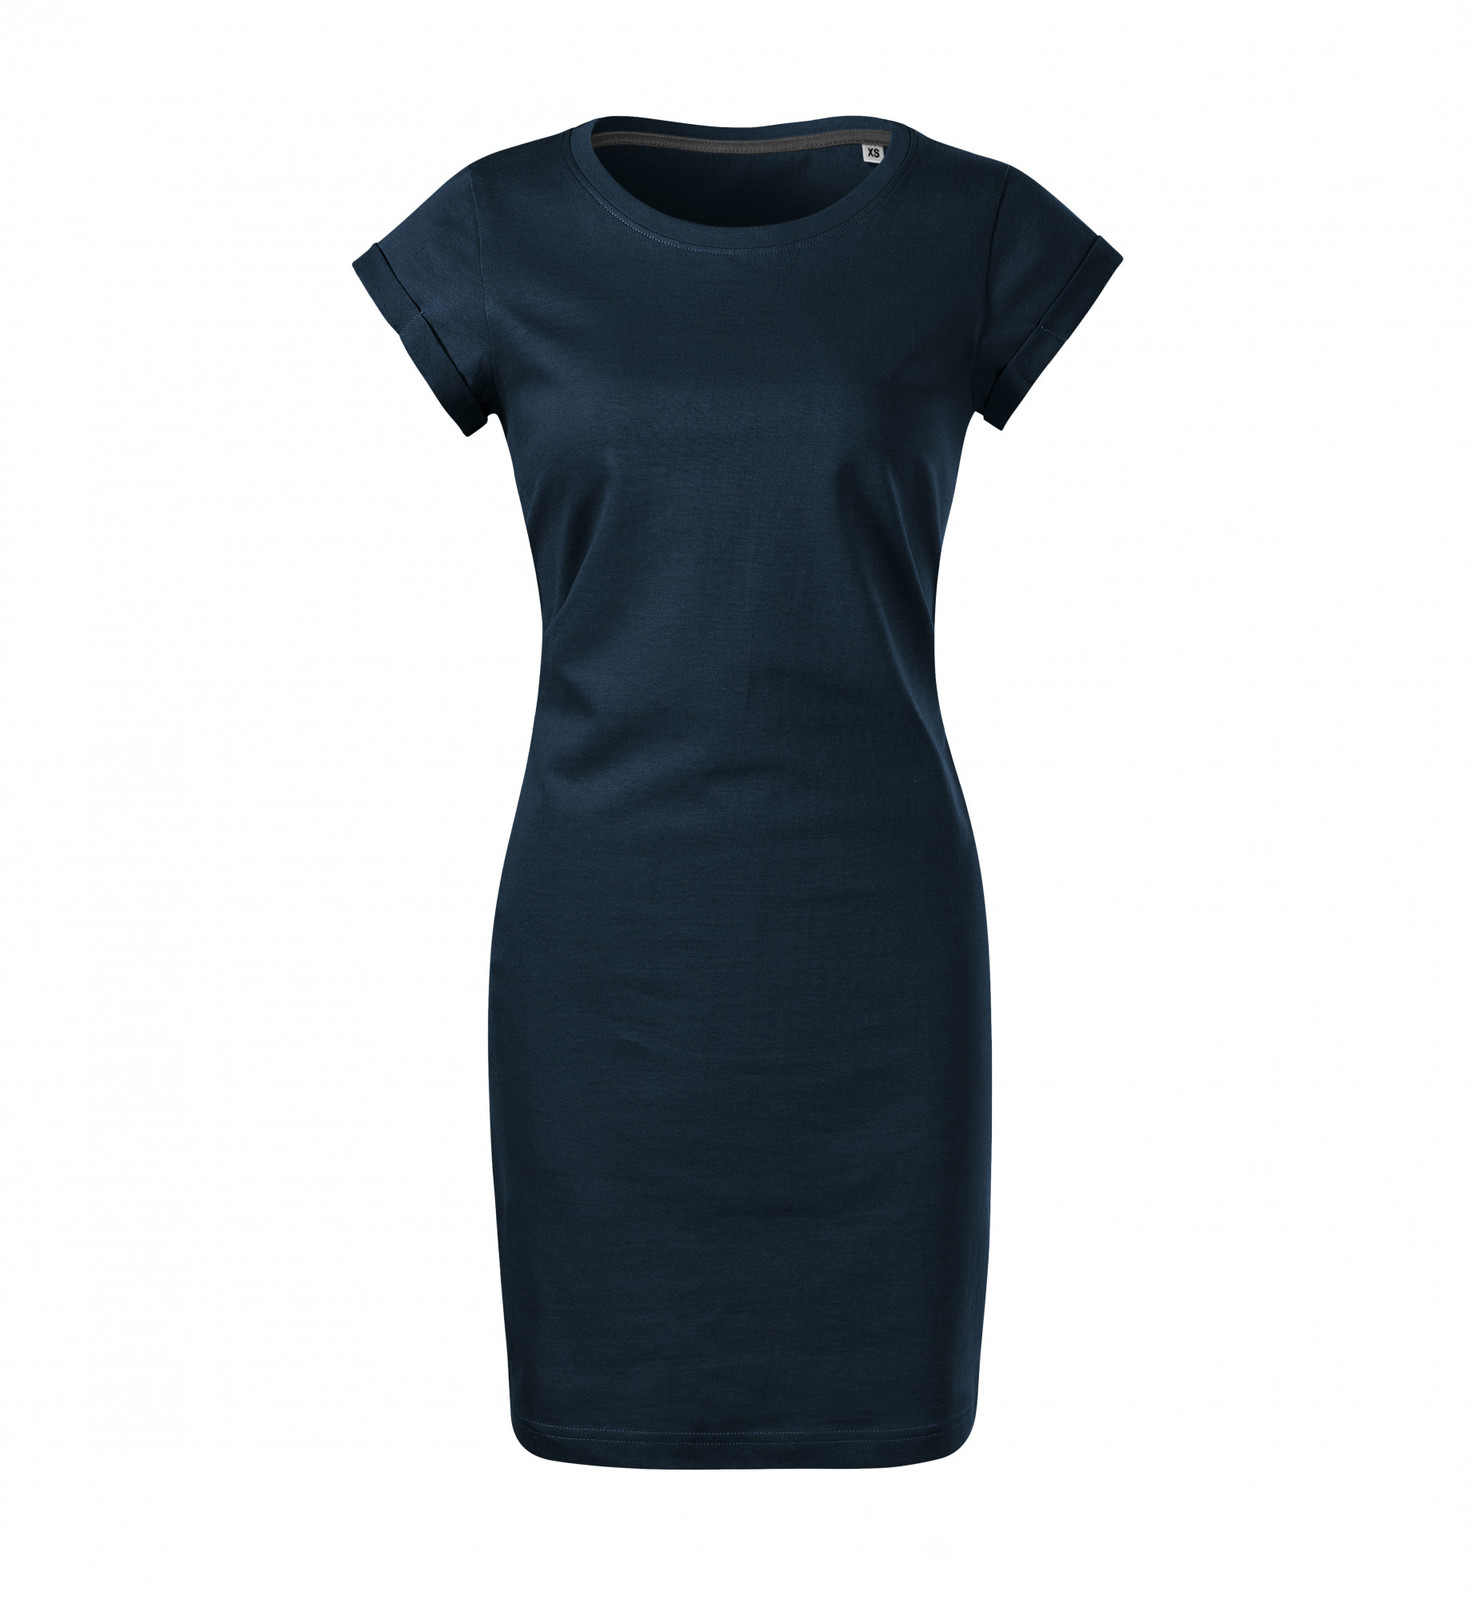 Dámske šaty Malfini Freedom 178 - veľkosť: S, farba: tmavo modrá